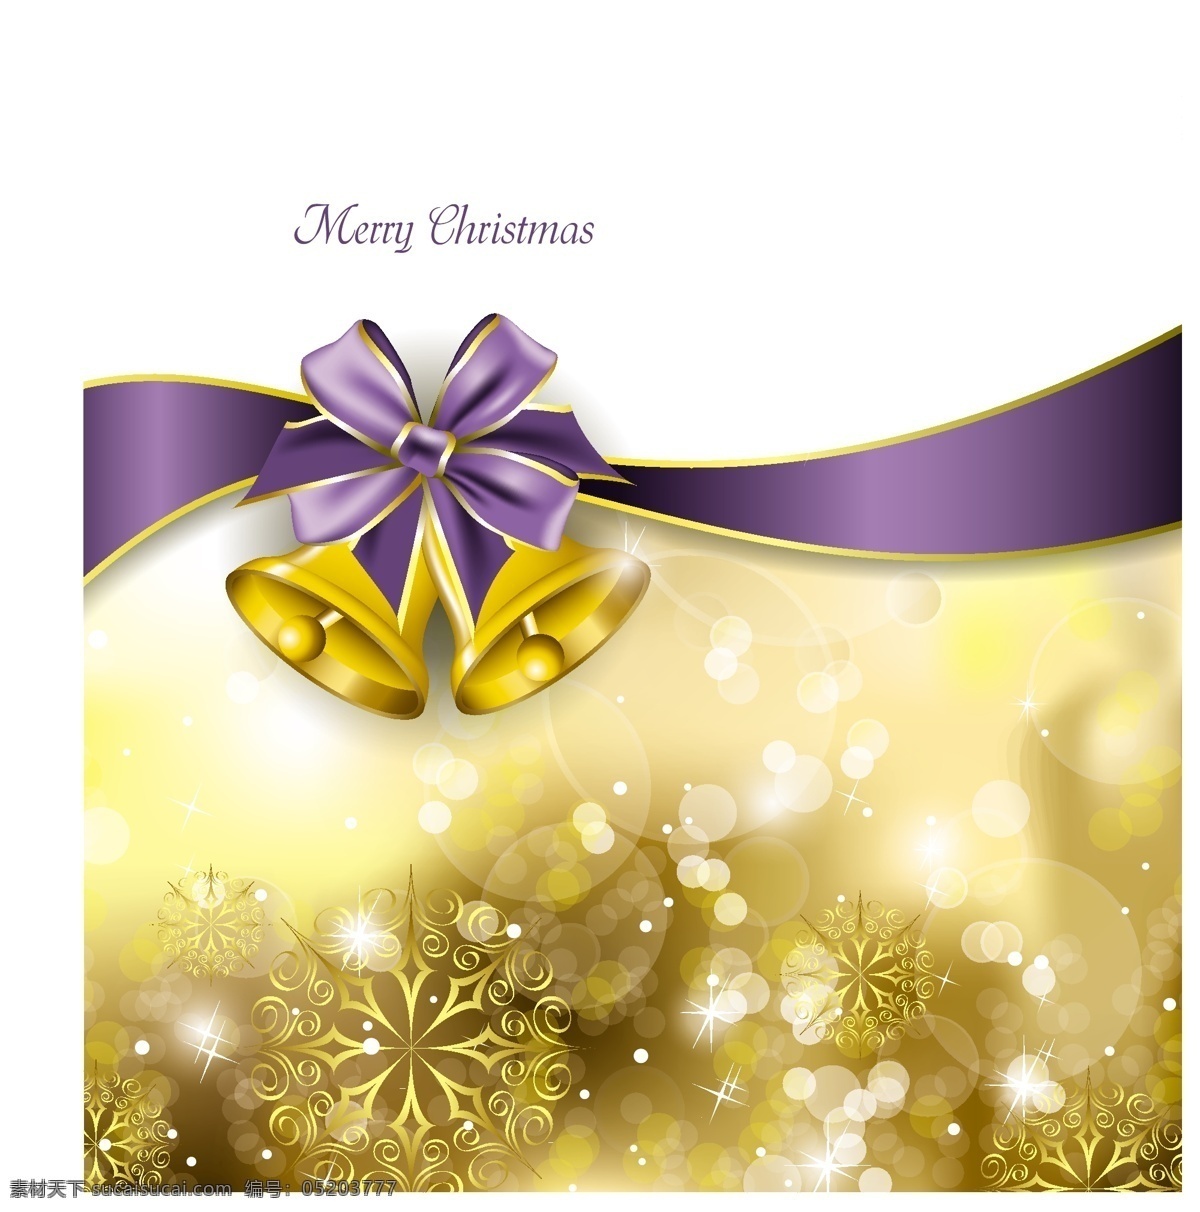 精美 圣诞 铃铛 插画 矢量 光效 光晕 蝴蝶结 金色 圣诞节 圣诞铃铛 矢量图 雪花 紫色 海报 其他海报设计